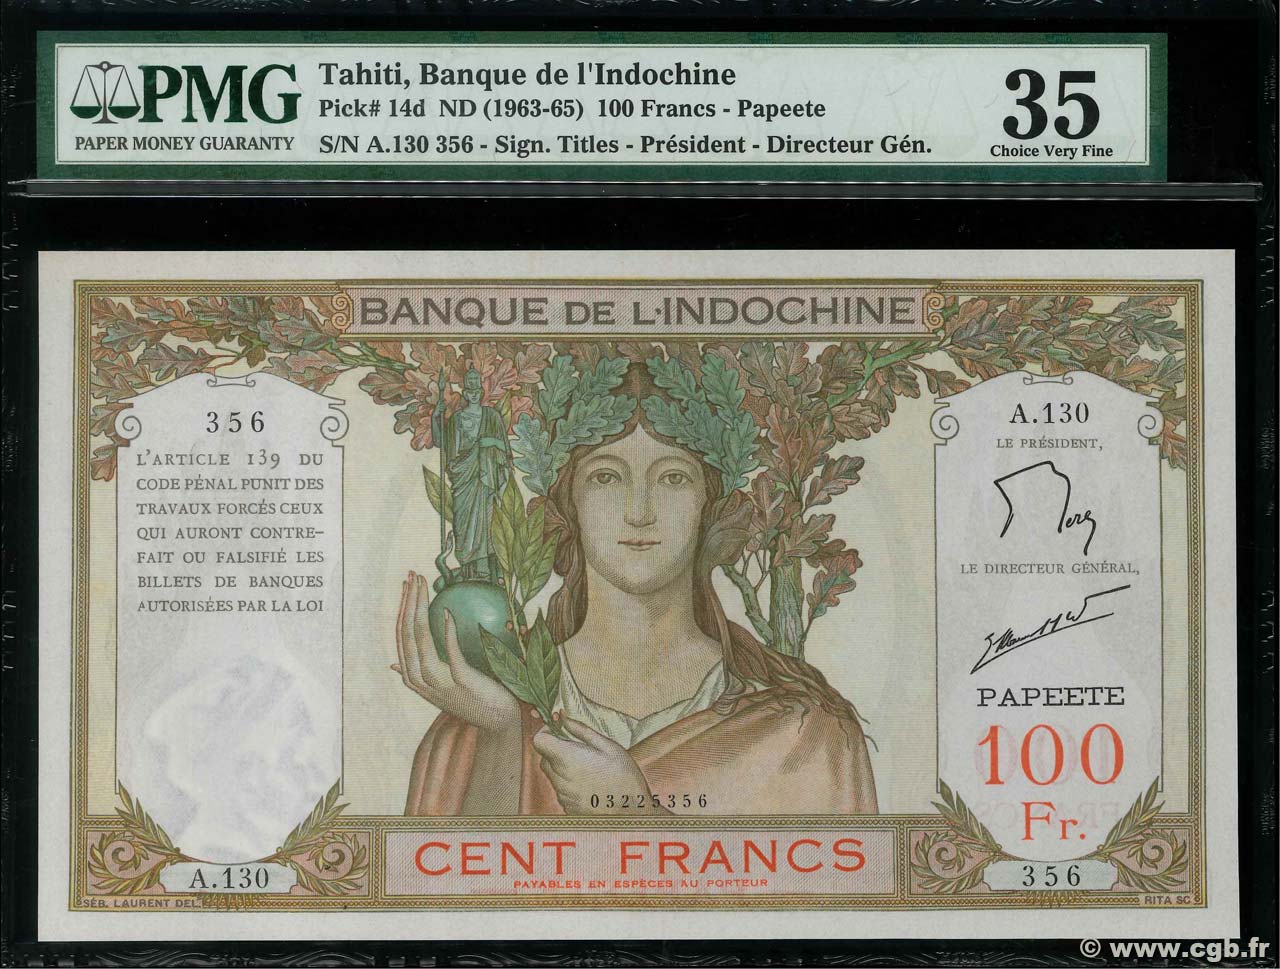 100 Francs TAHITI  1961 P.14d SS